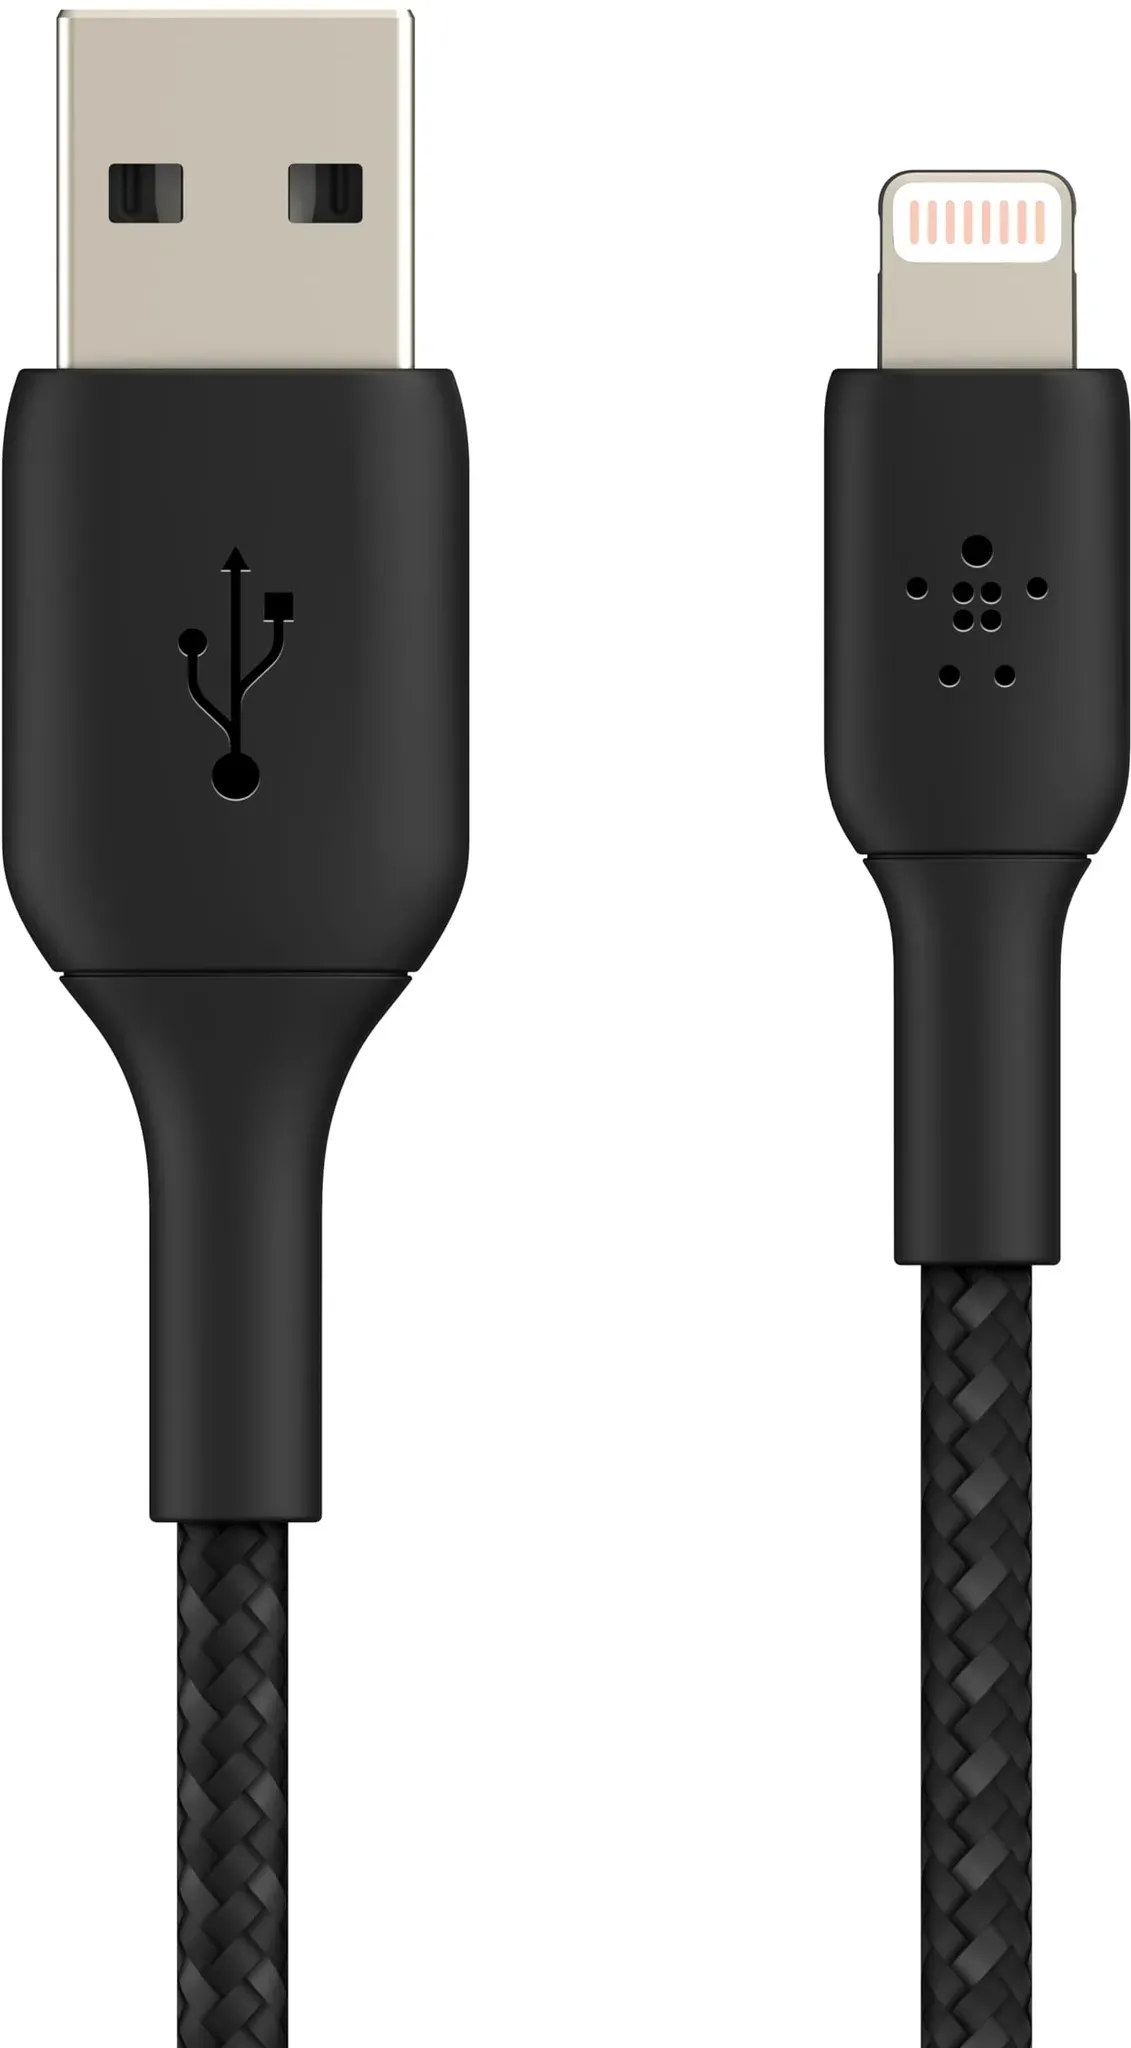 Belkin geflochtenes Lightning-Kabel (Boost Charge Lightning-/USB-Kabel für iPhone, iPad, AirPods) MFi-zertifiziertes iPhone-Ladekabel, geflochtenes Lightning-Kabel (15 cm, Schwarz)